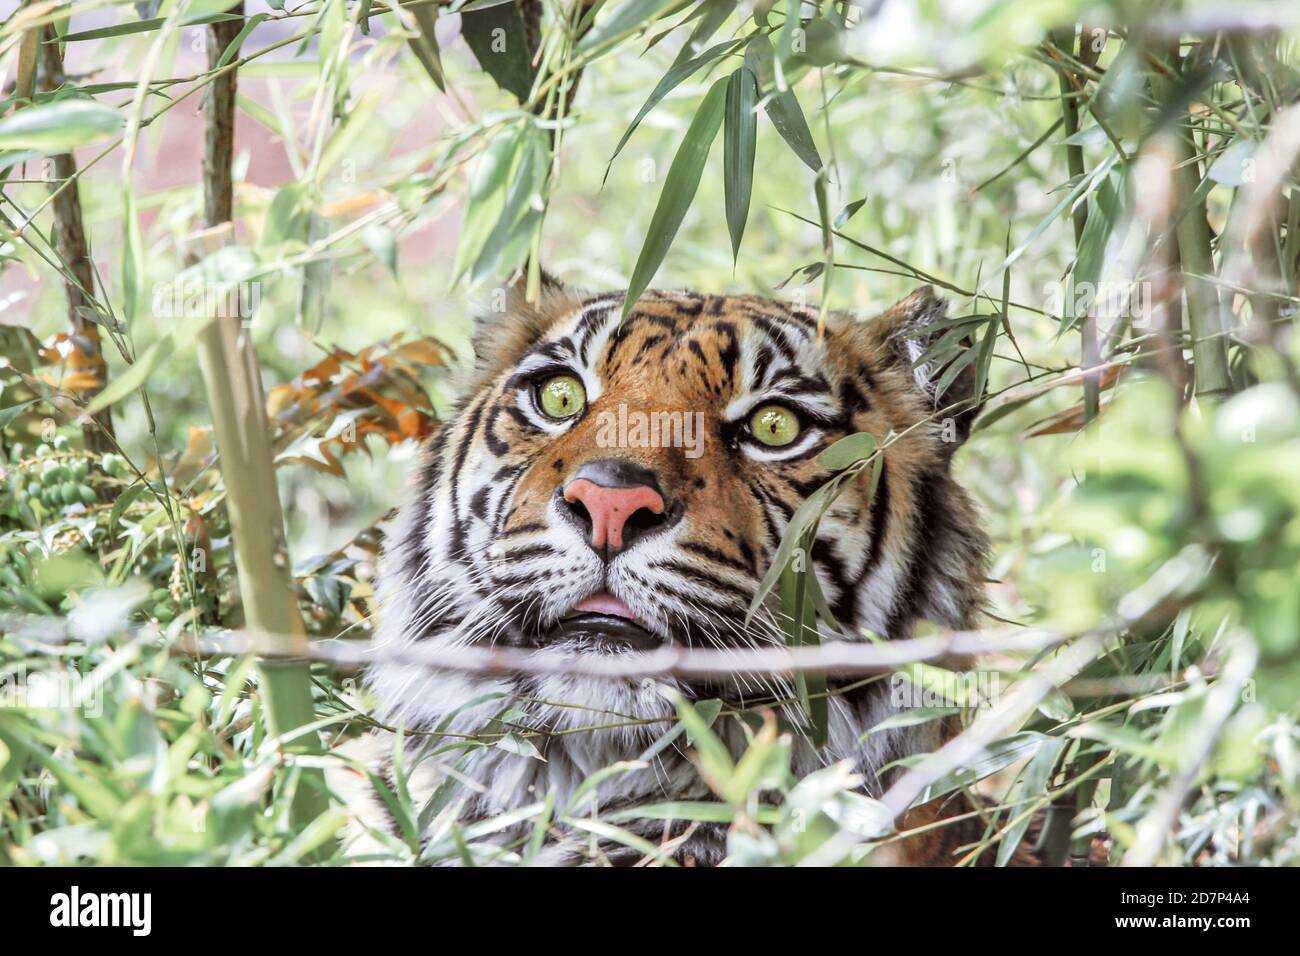 gros plan d'un tigre caché derrière des buissons verts Banque D'Images